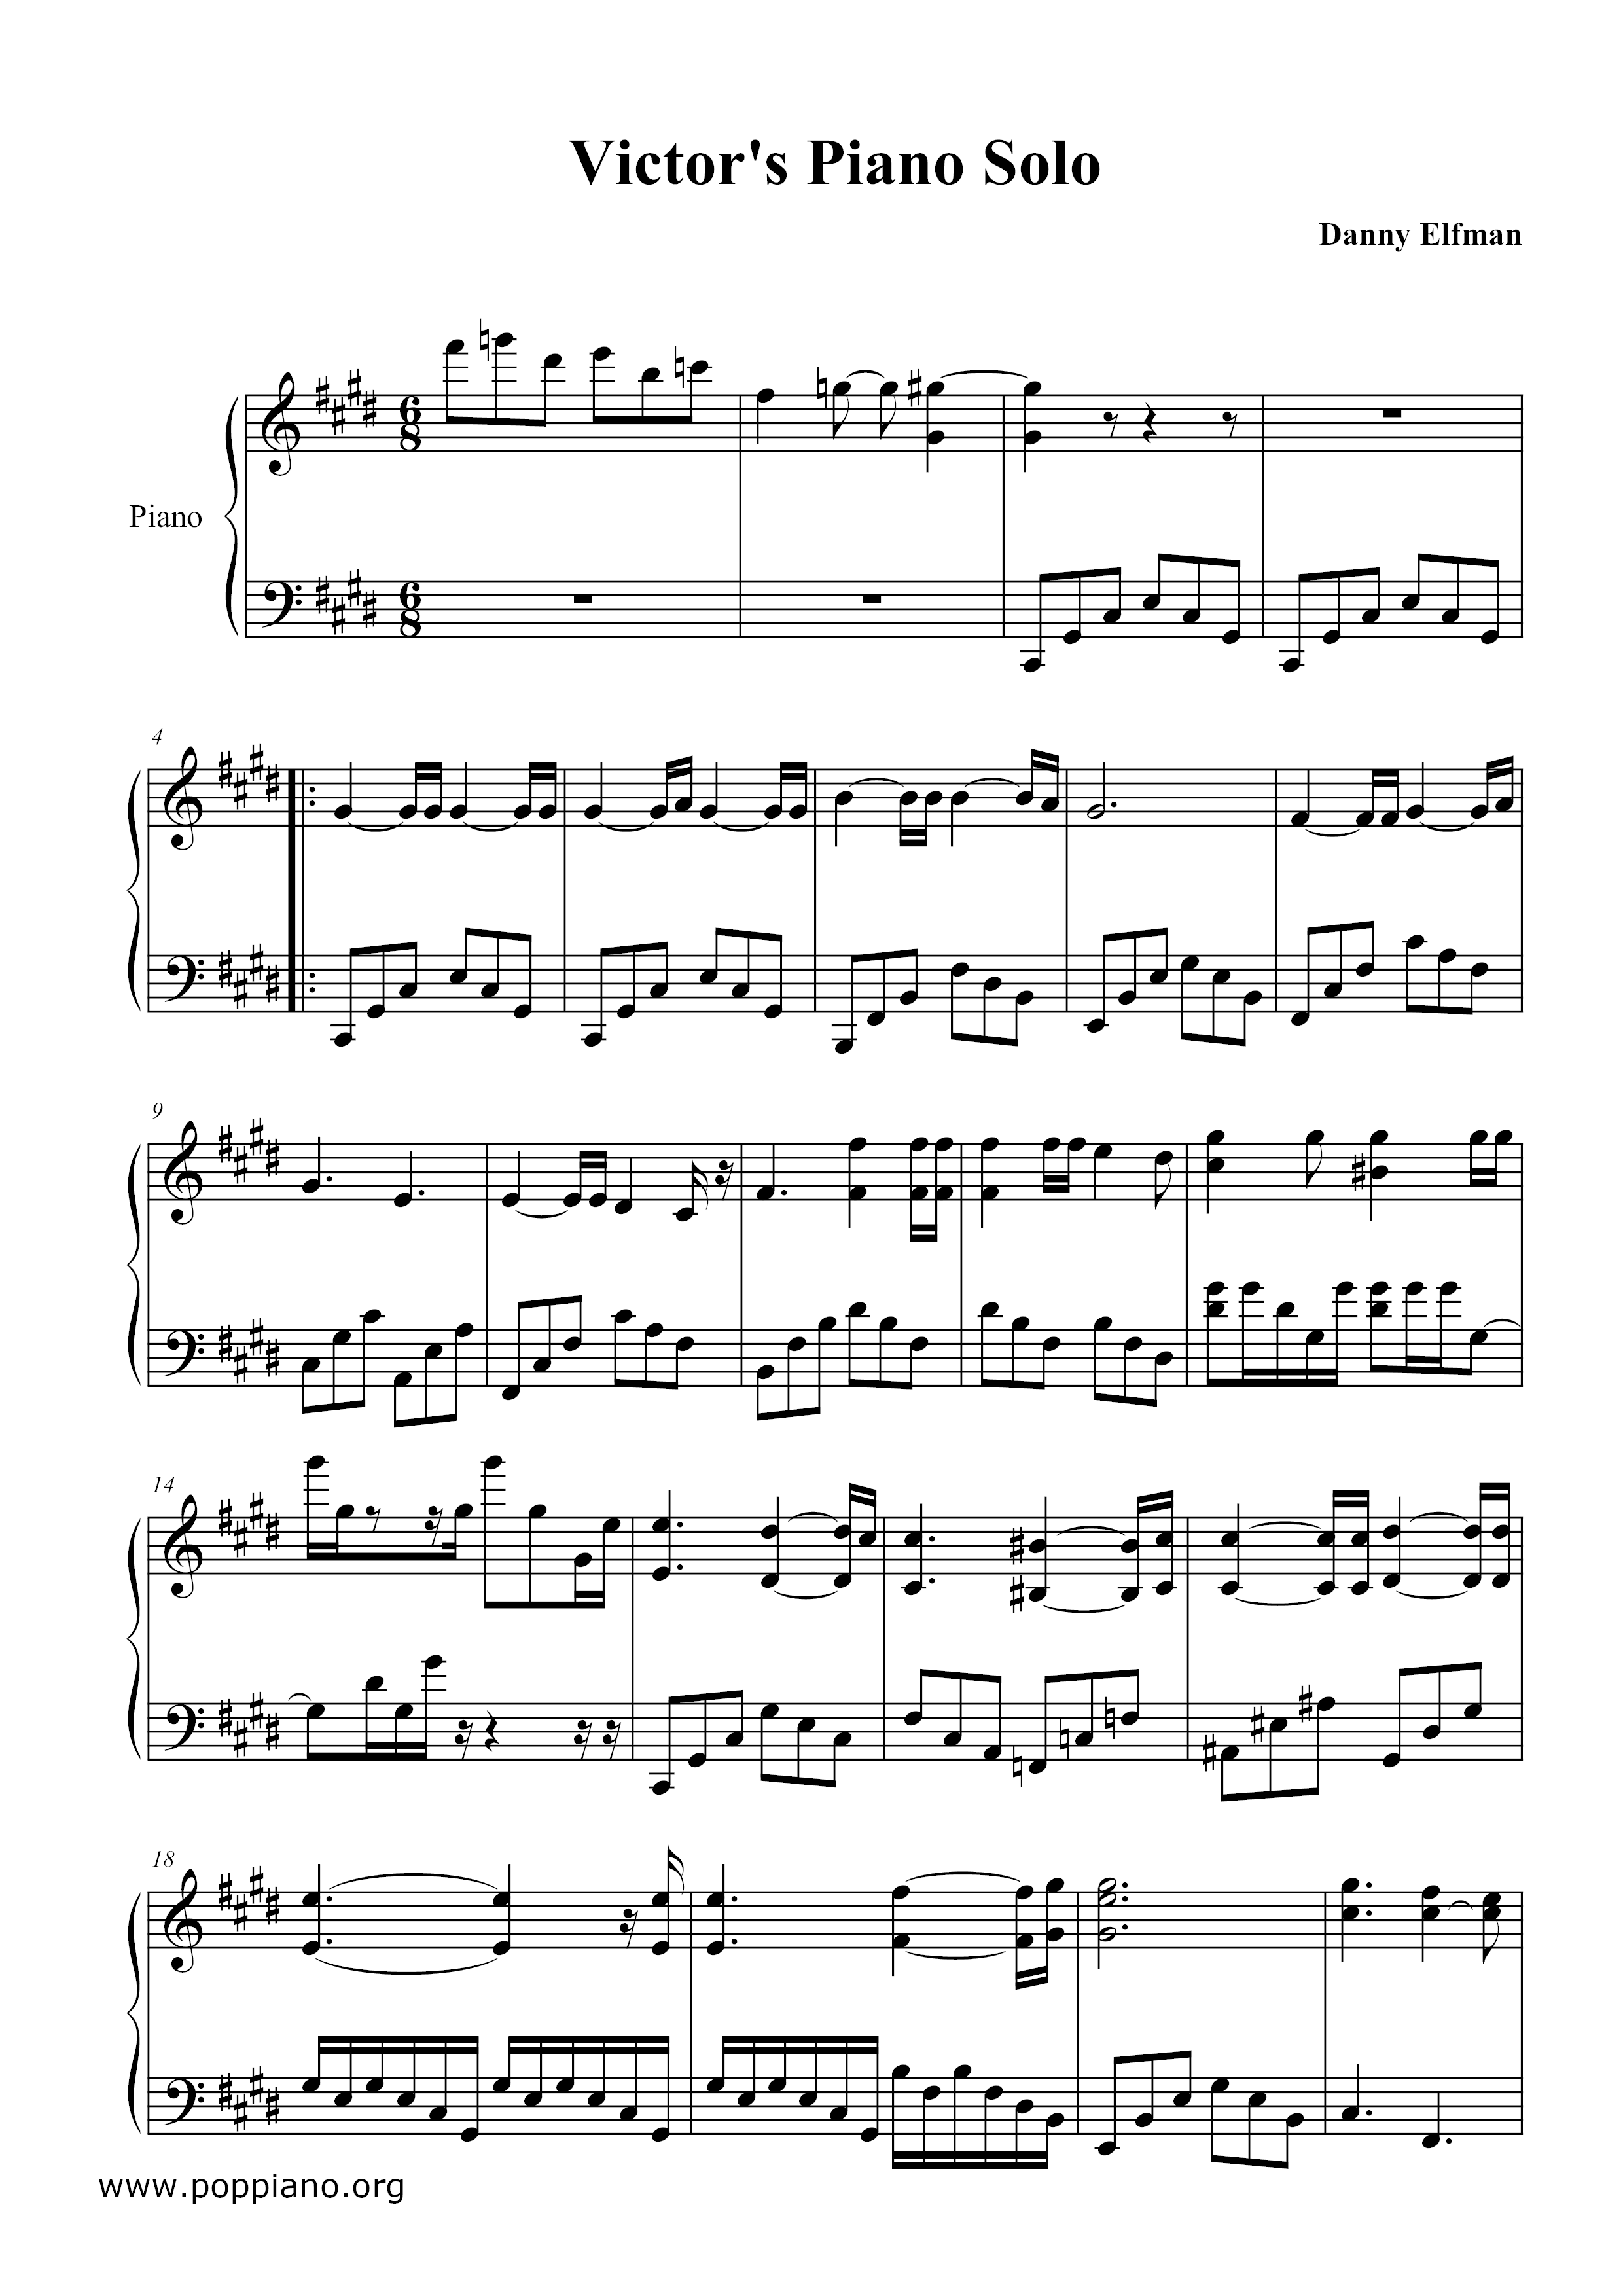 The Corpse Bride - Victor's Piano Solo Score